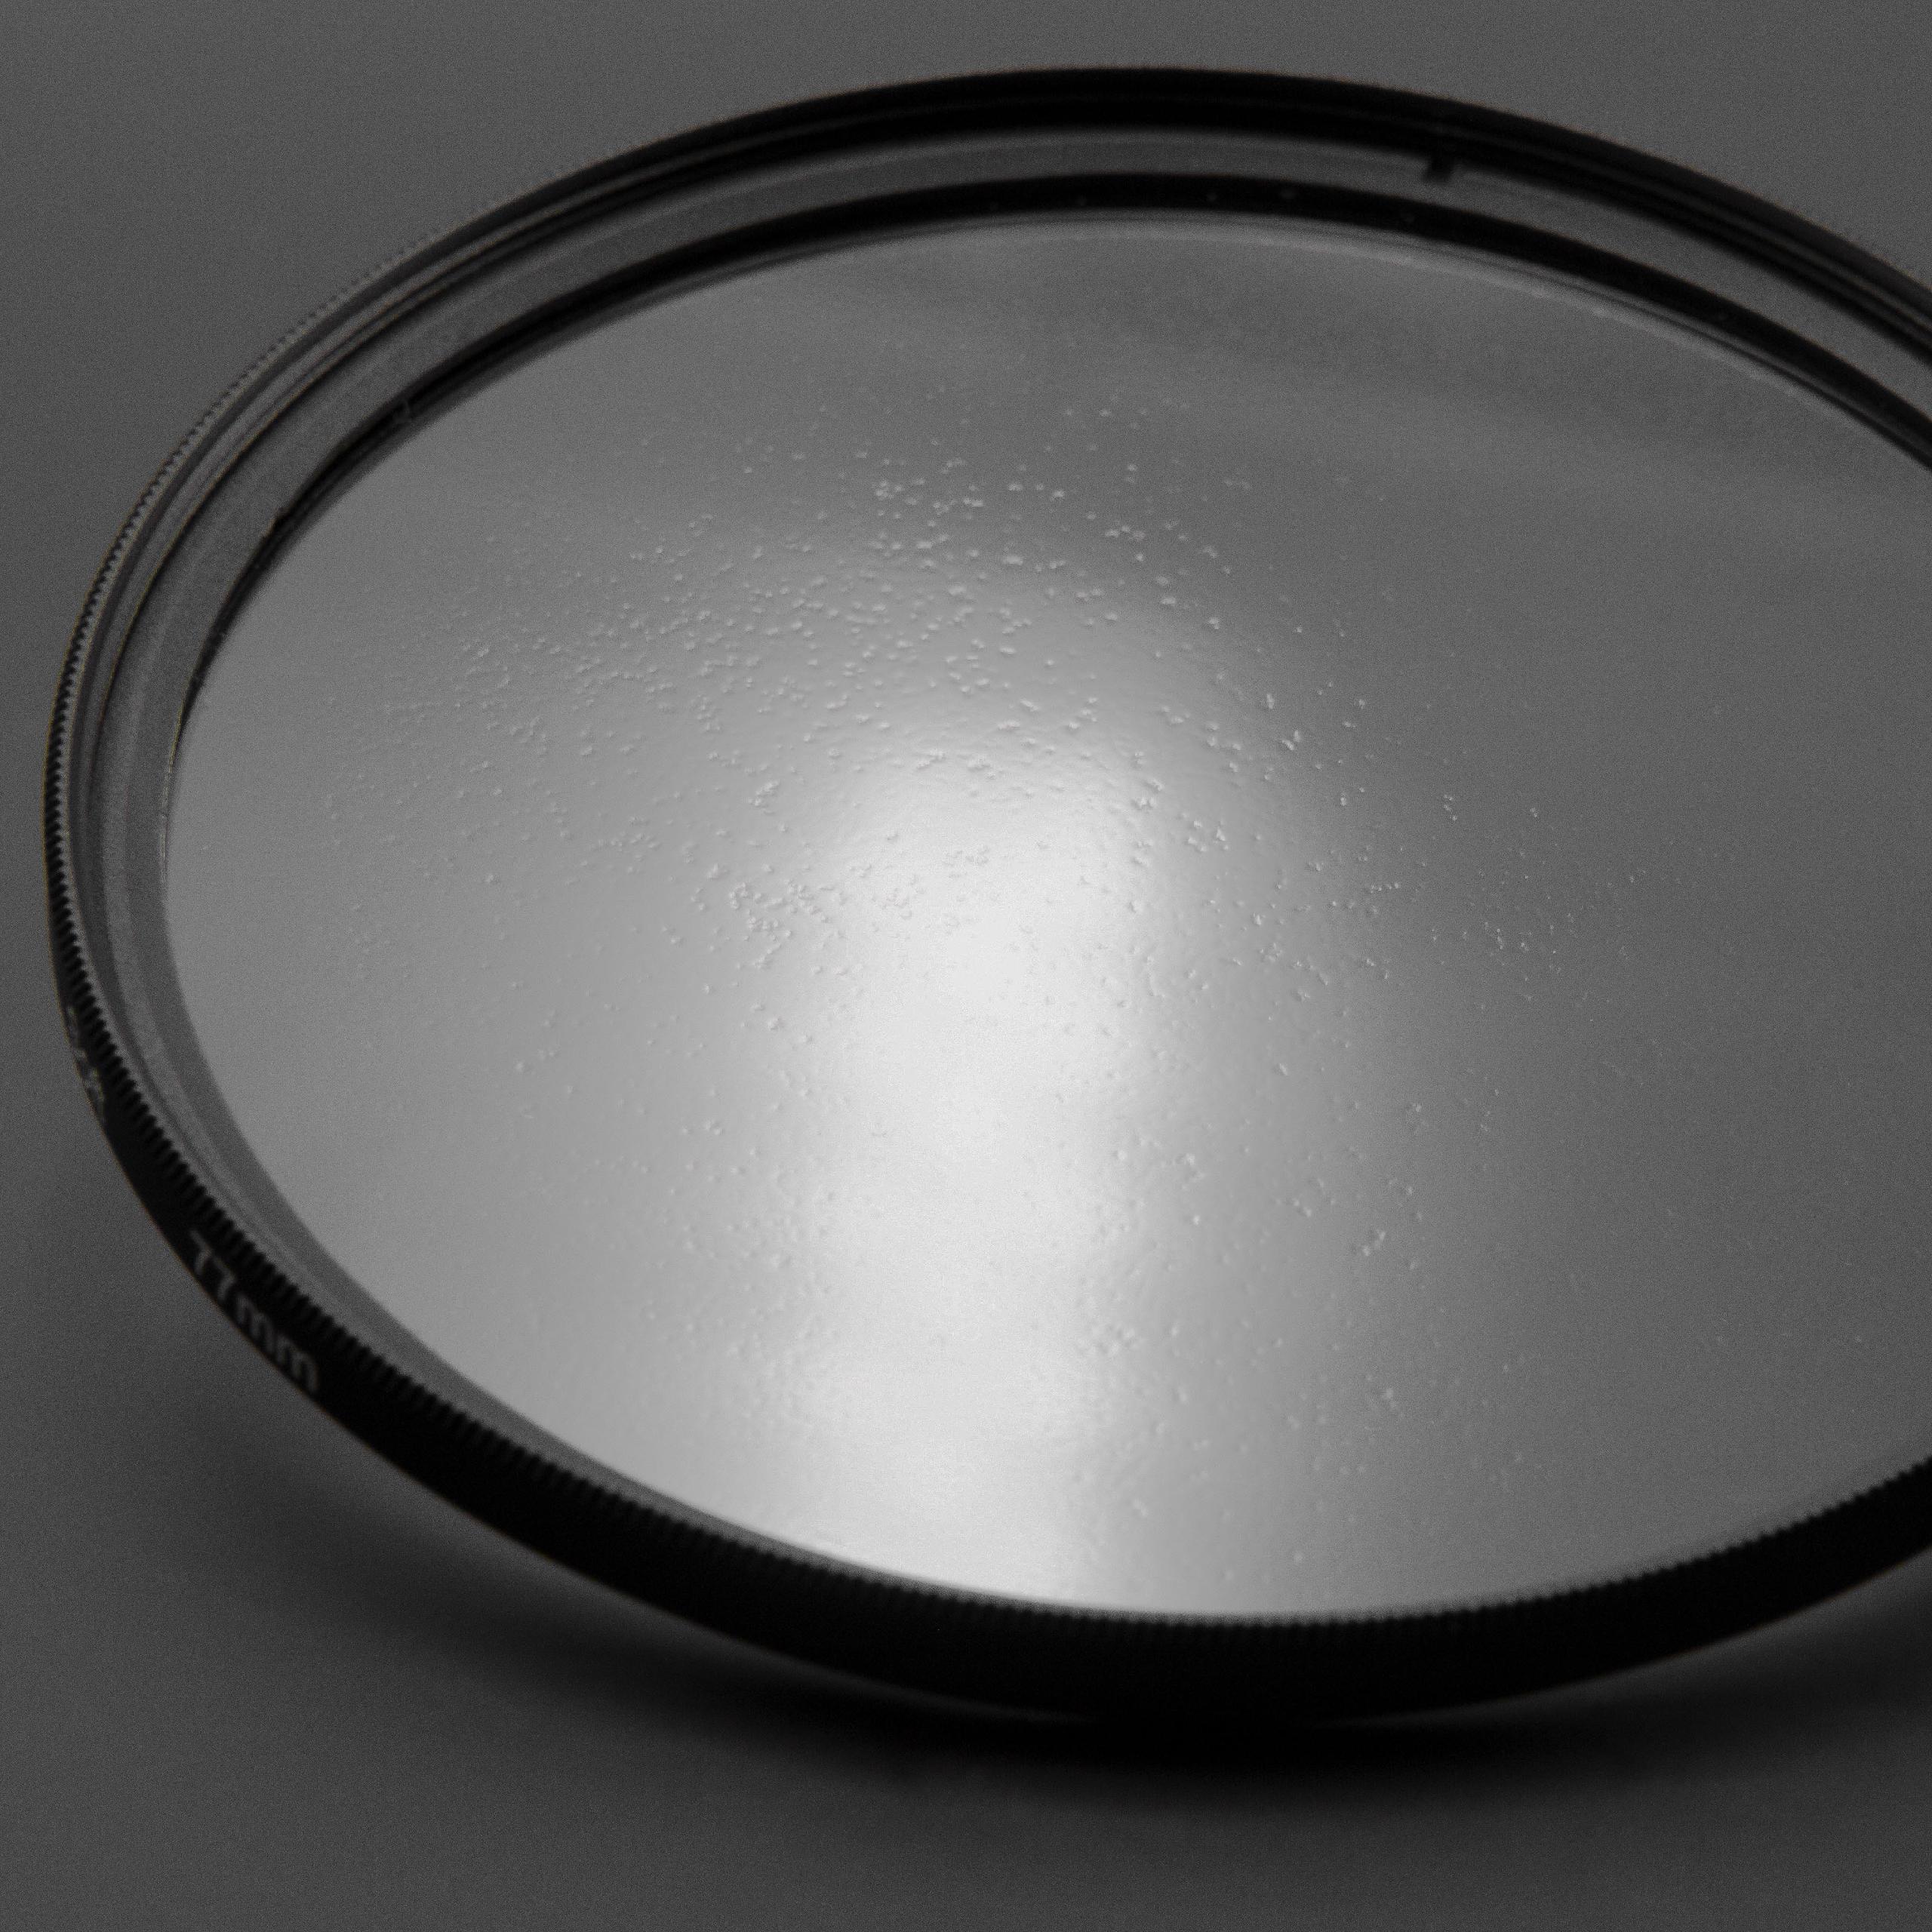 Filtre soft pour objectif d'appareil photo de diamètre 52 mm - Filtre doux